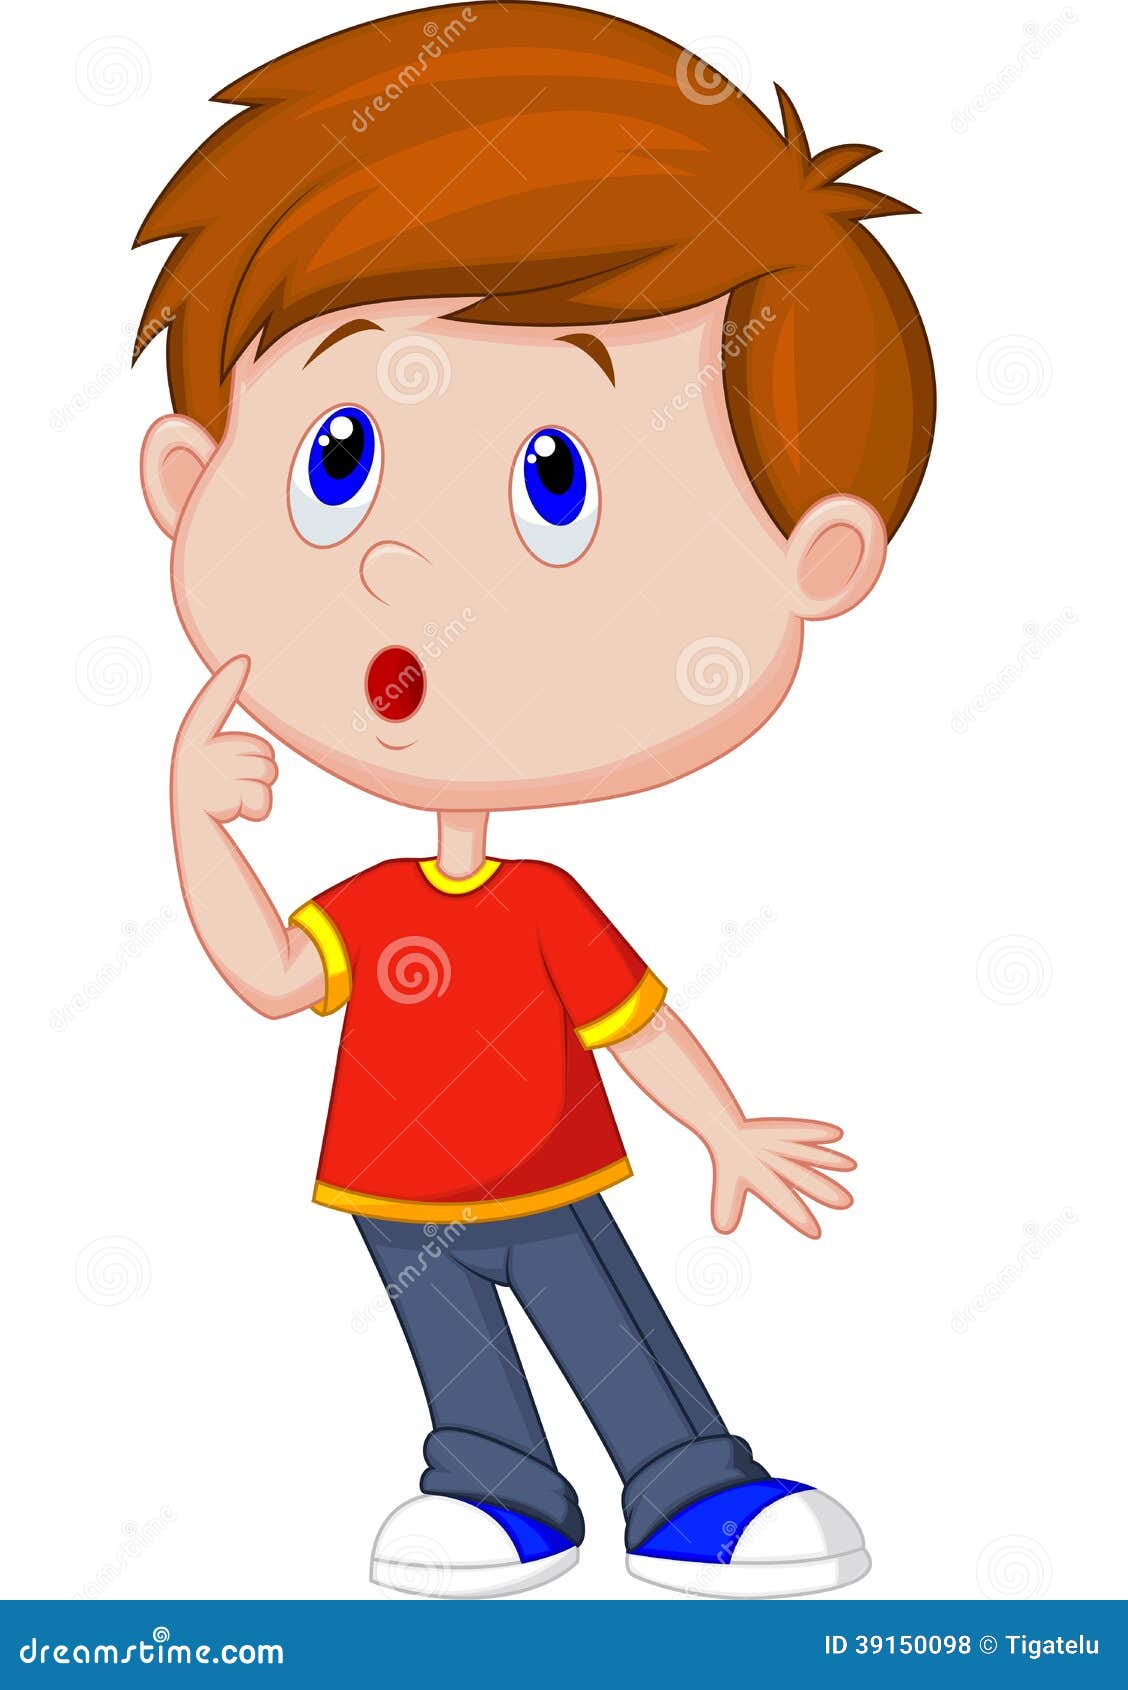 Cute boy cartoon thinking stock vector. Illustration of preschool - 39150098